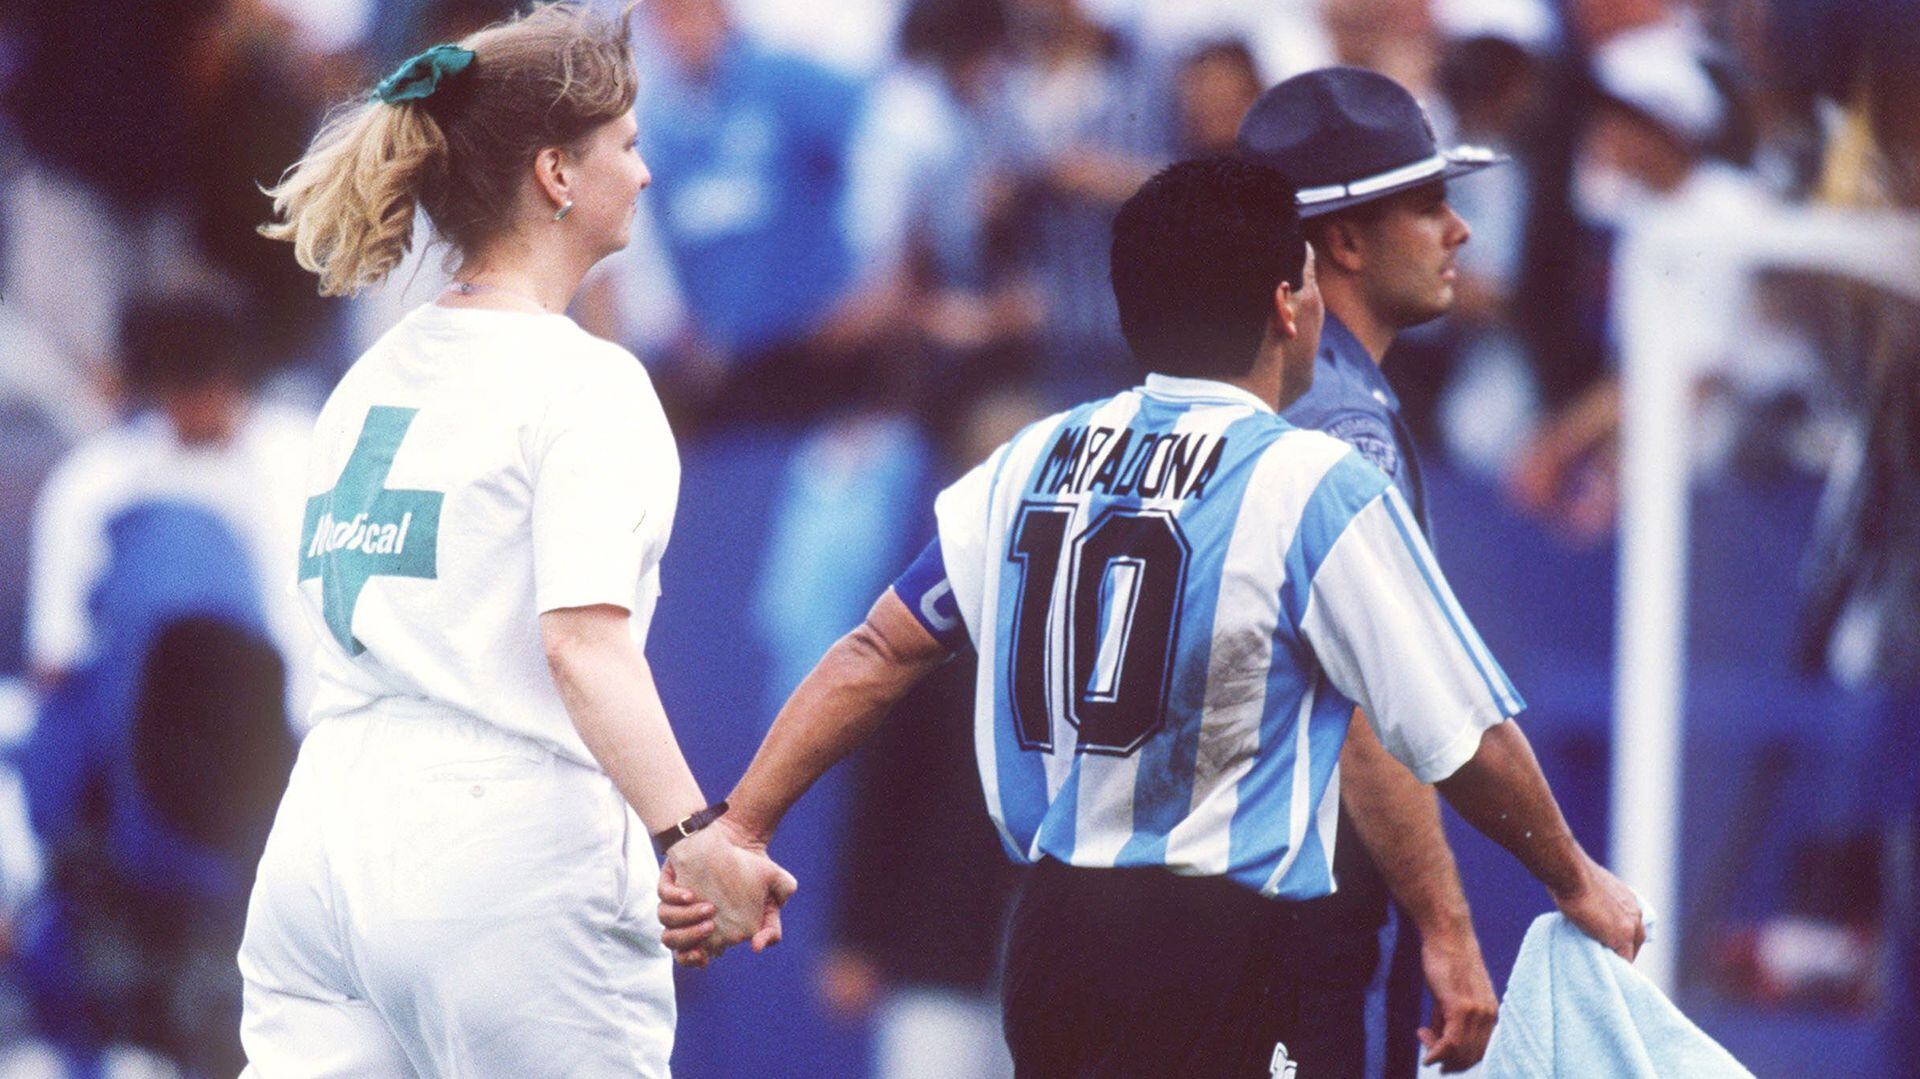 El recuerdo de Maradona junto a la enferma que lo llevó hasta el control antidoping en USA 94 tras el triunfo con Nigeria (Getty)